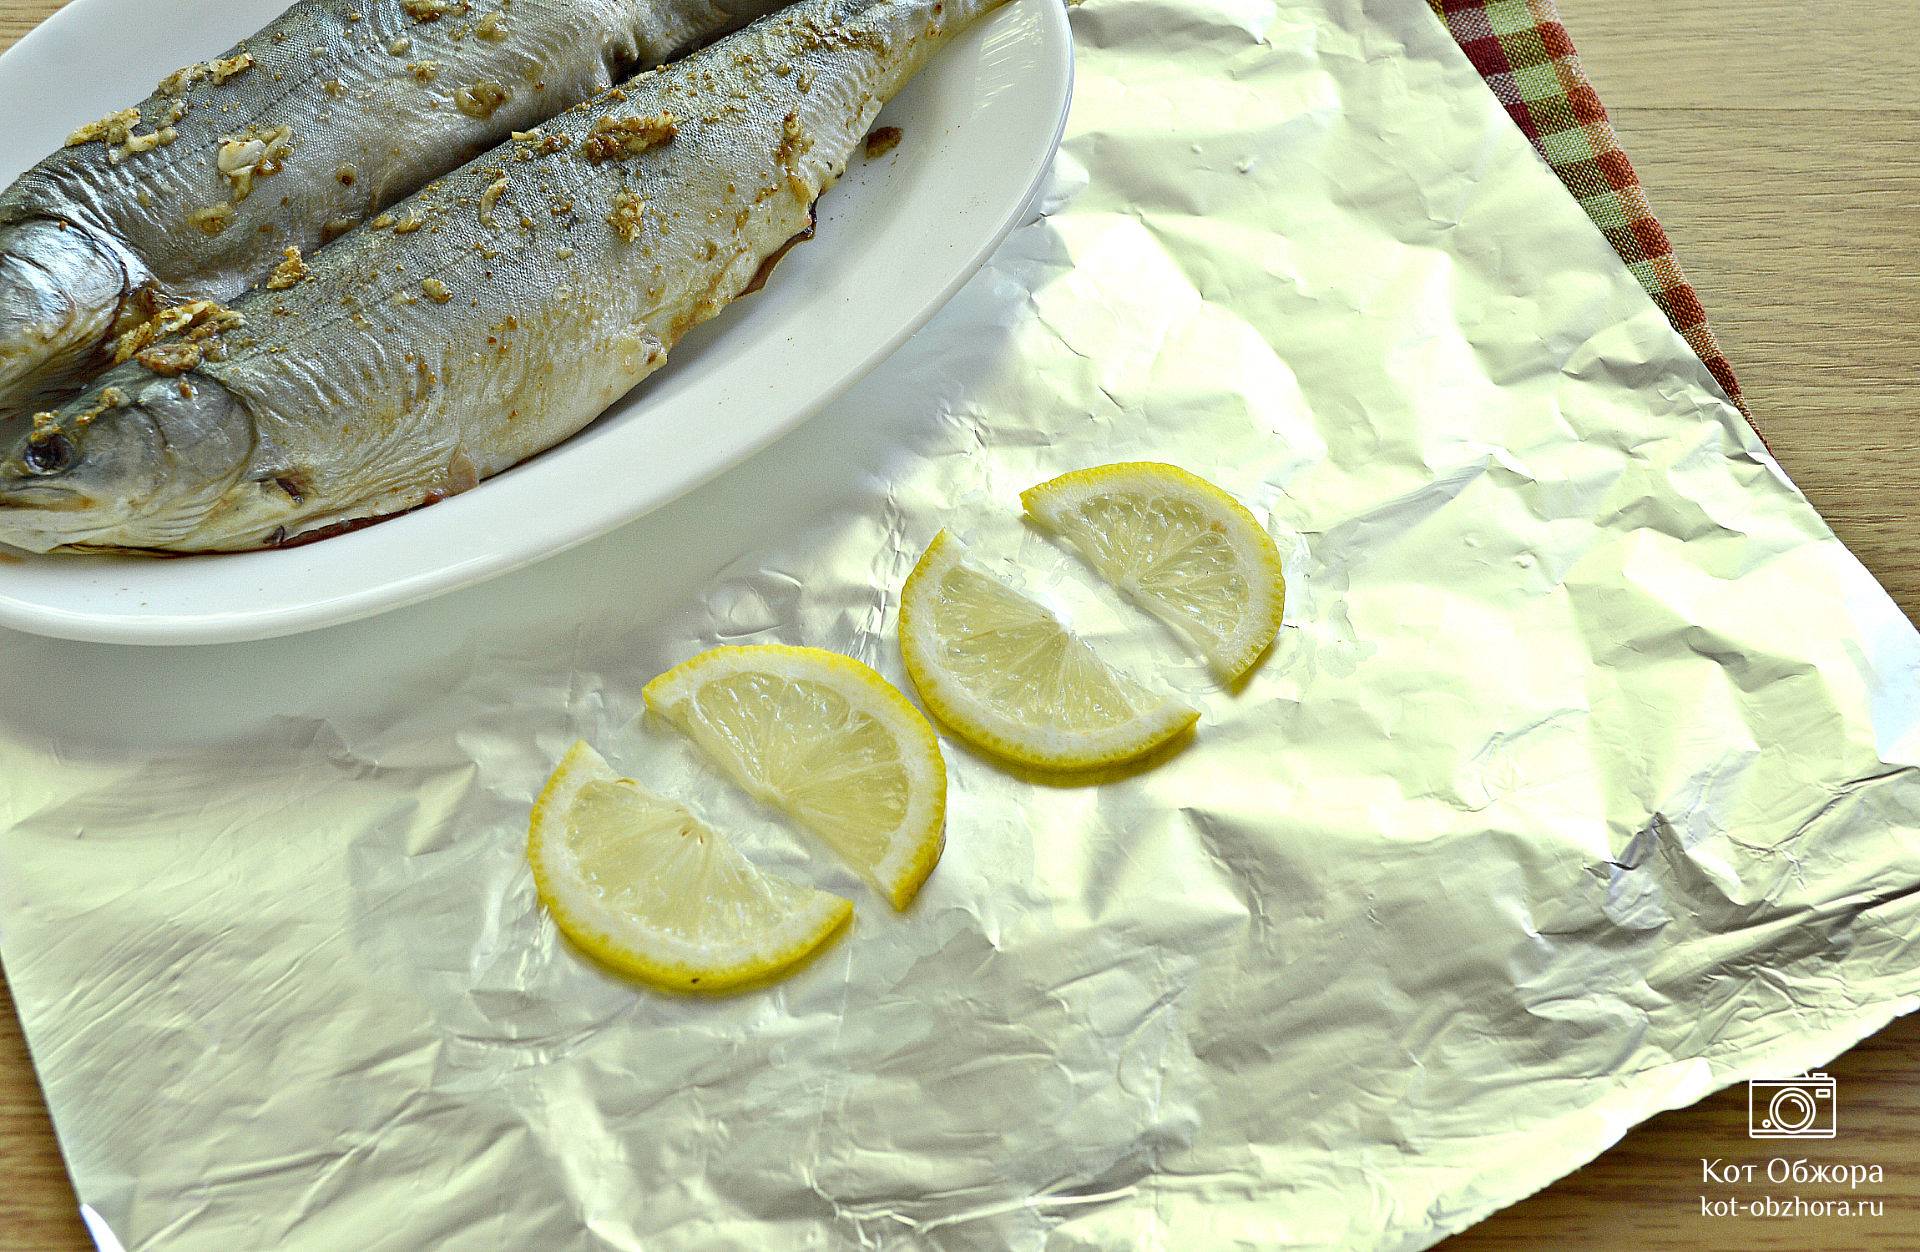 Голец в духовке: как вкусно приготовить рыбу - рецепт с фото